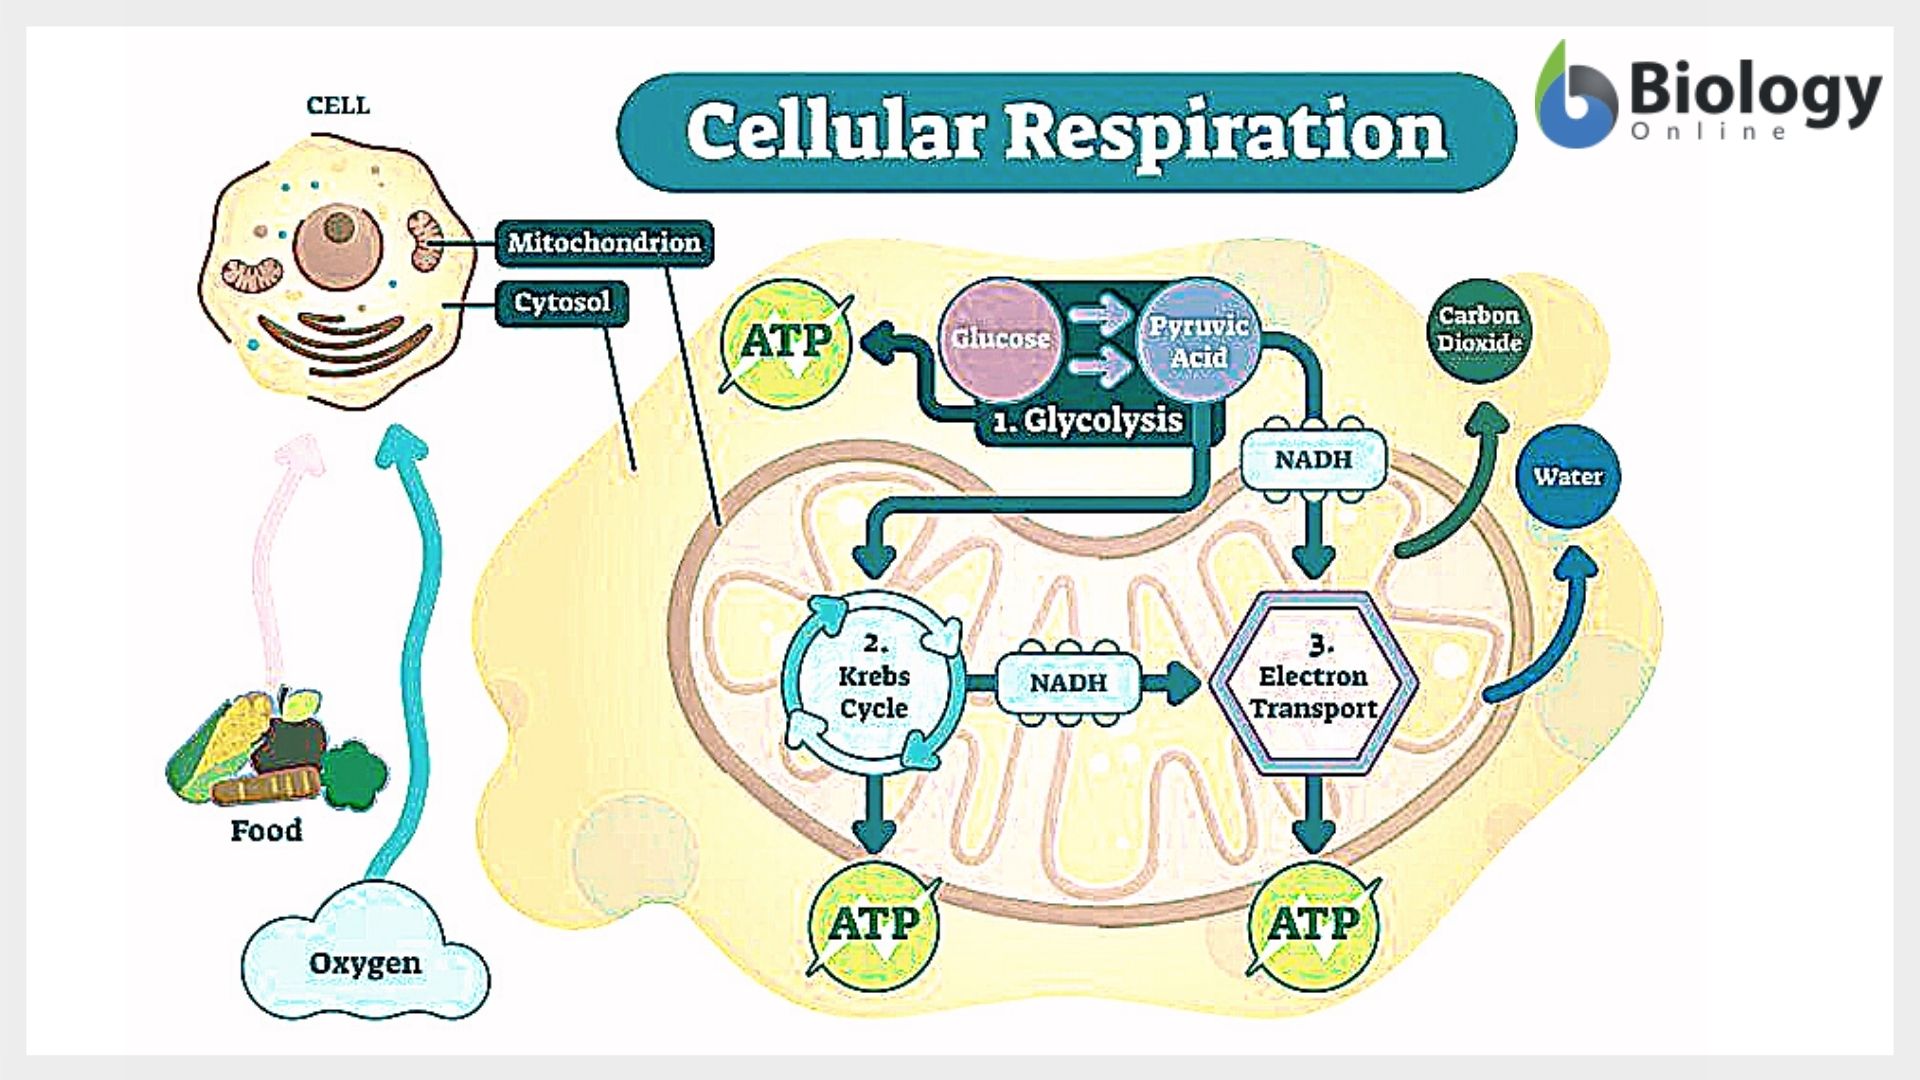 cellular respiration an overview